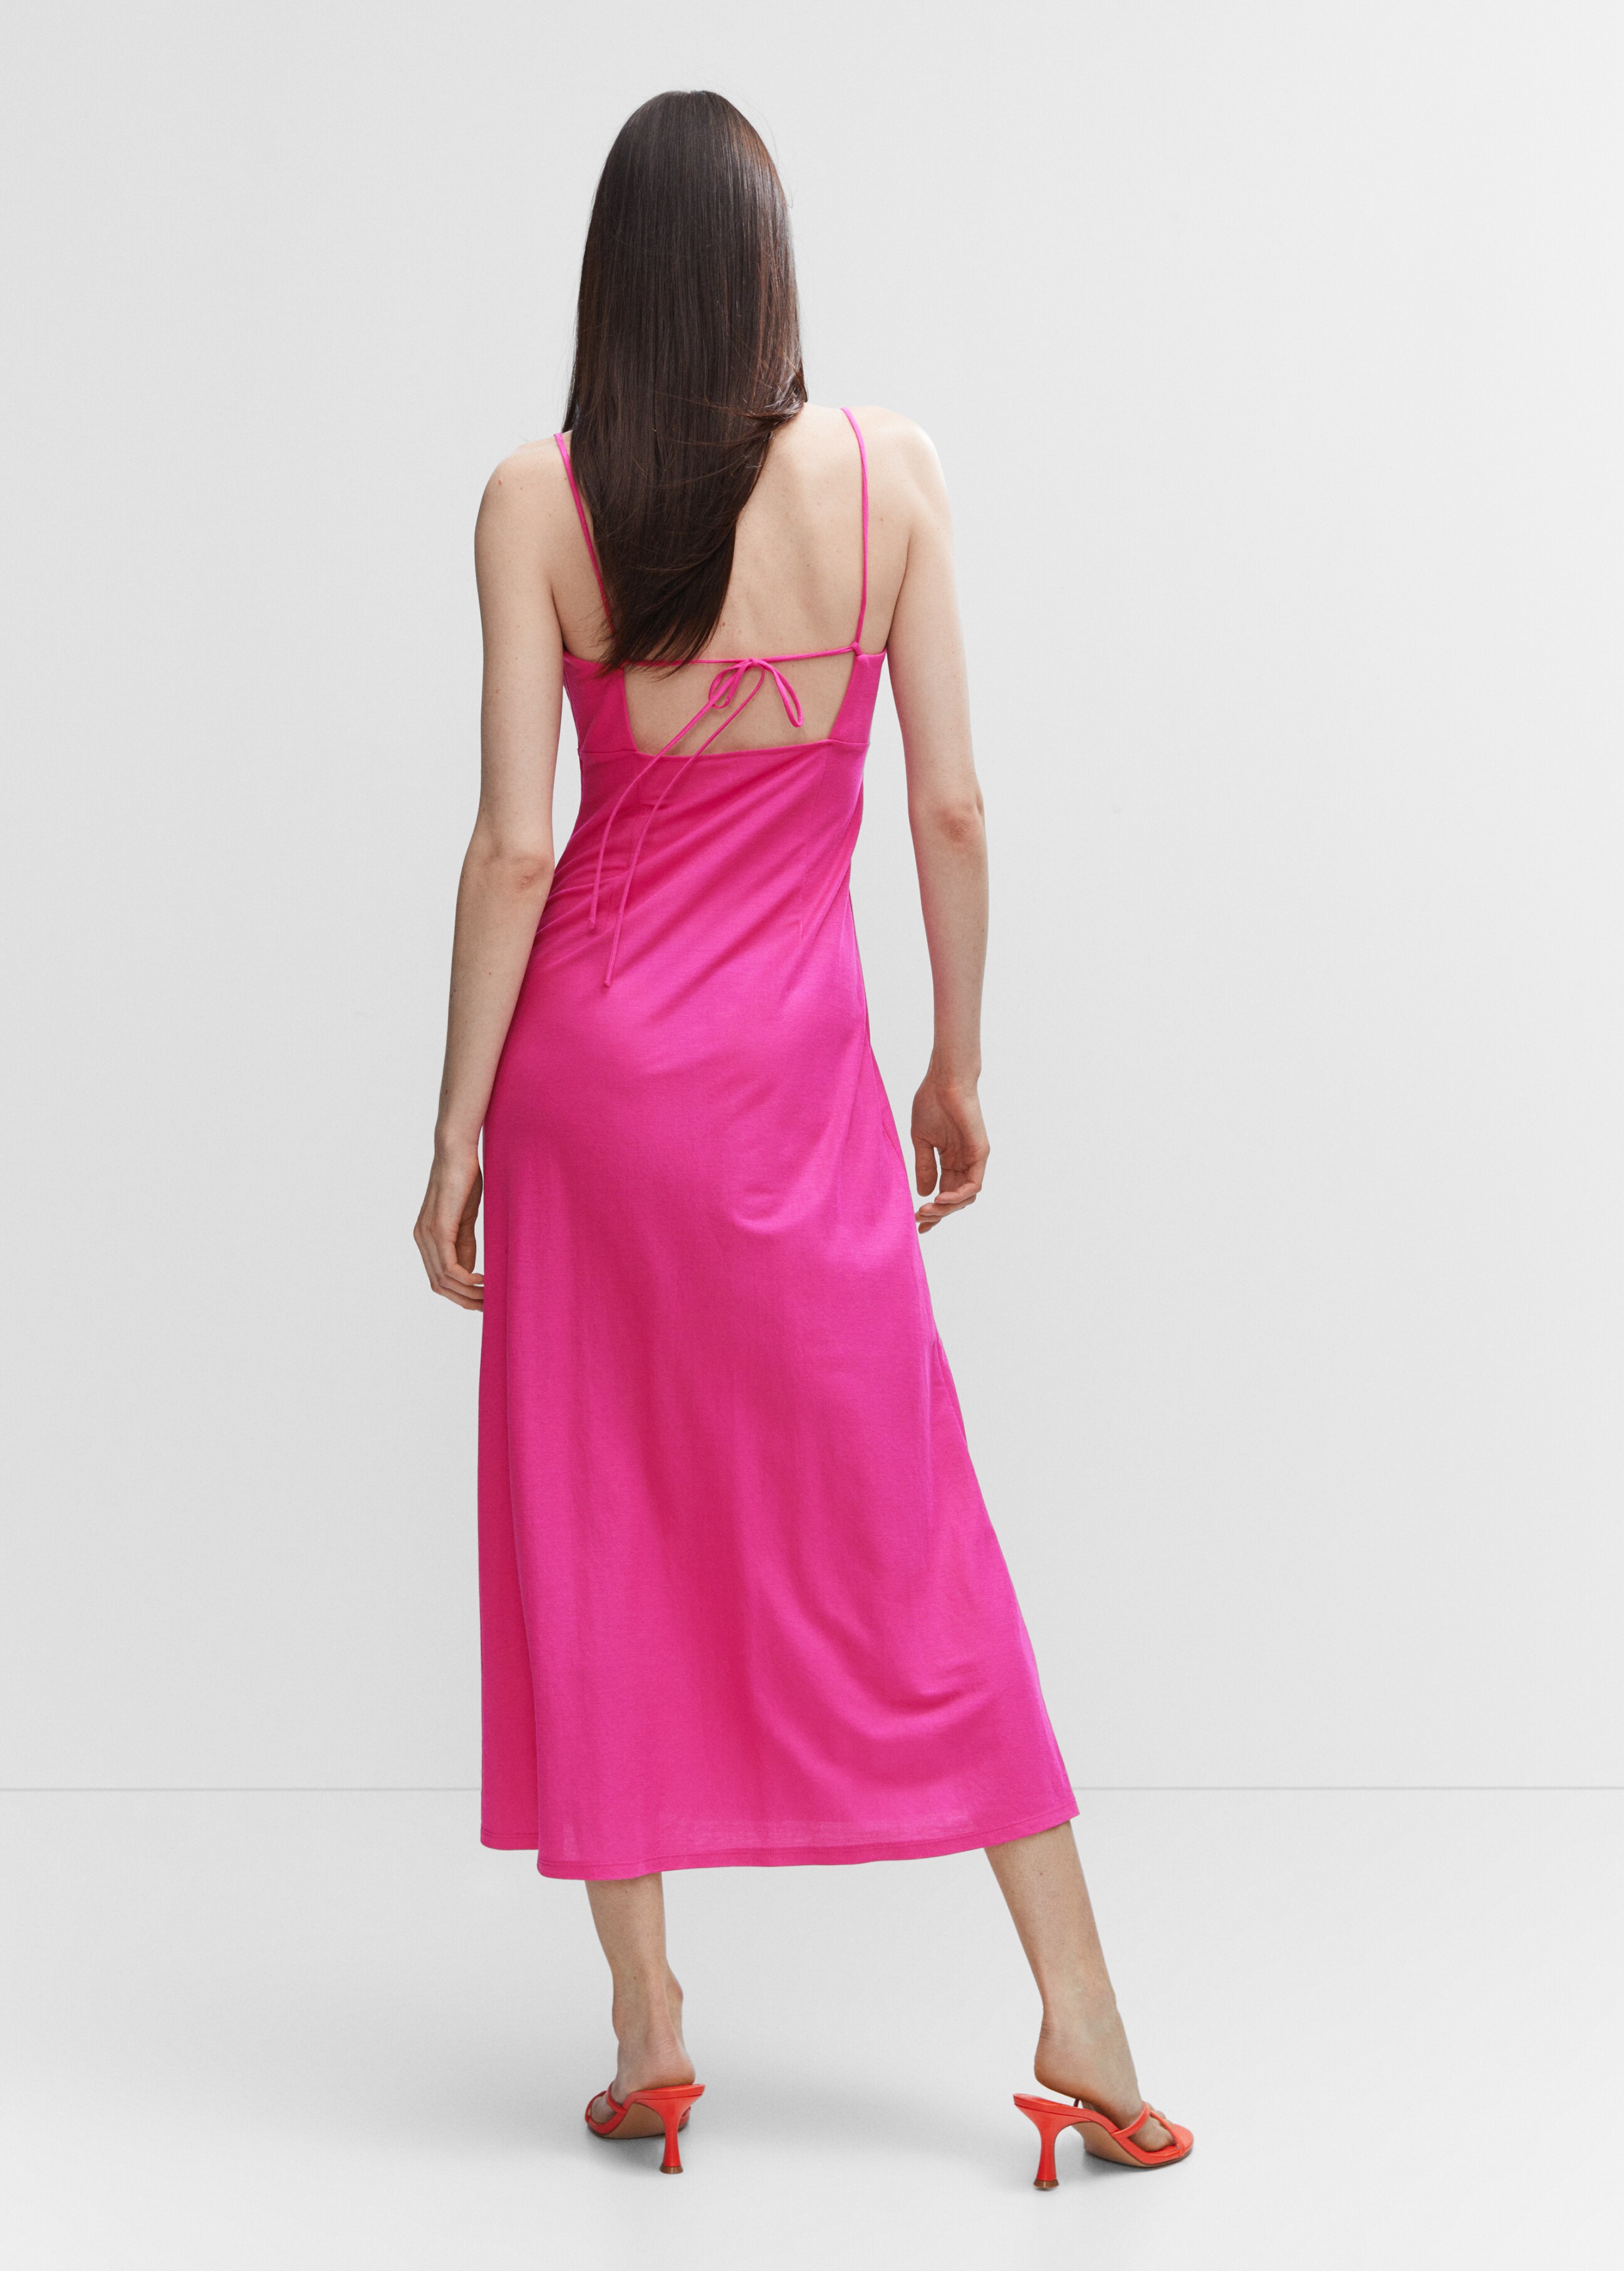 Kleid mit Seitenschlitz - Rückseite des Artikels